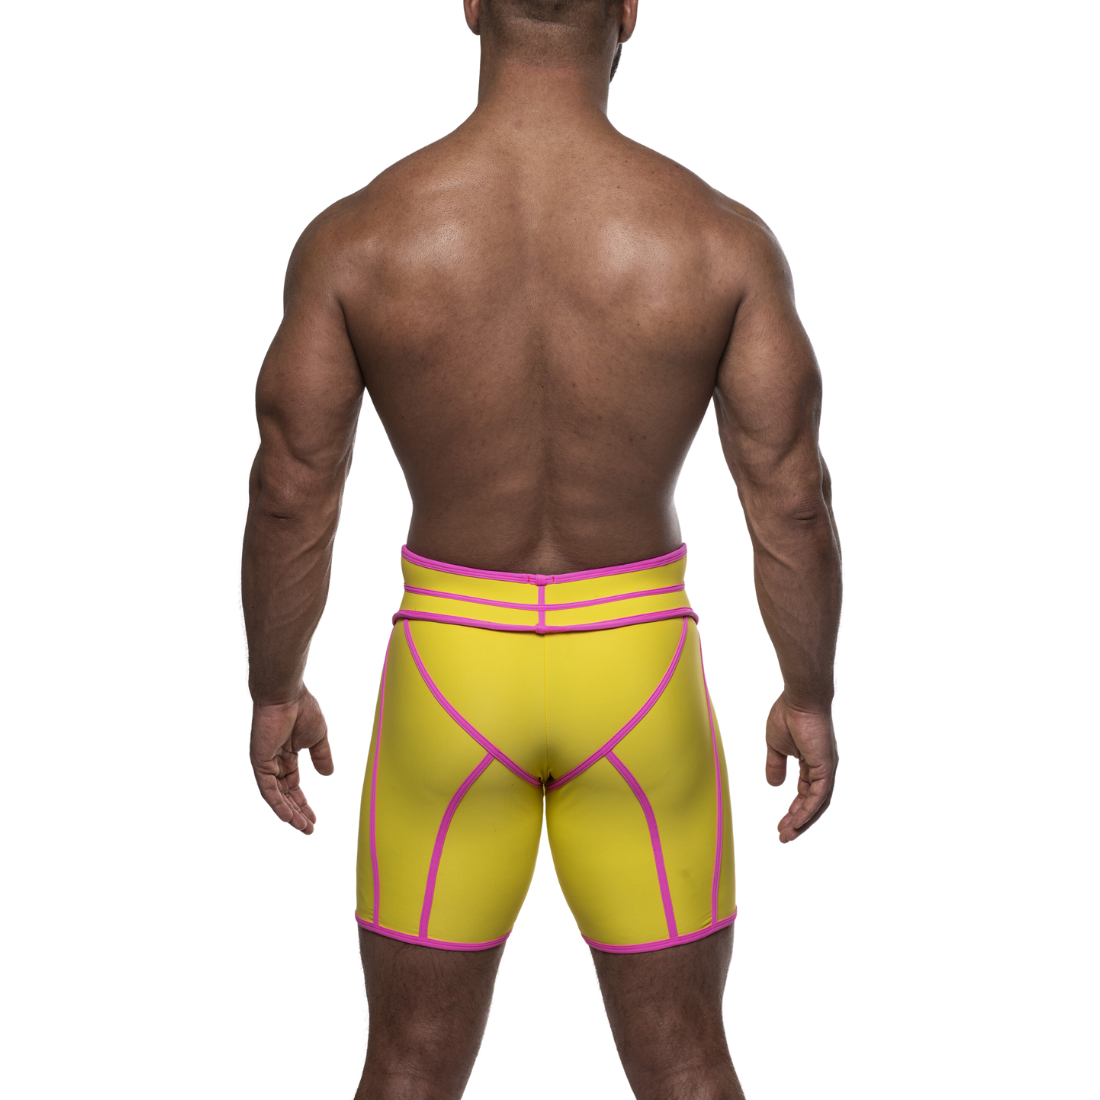 Unieke gele short met hoge tailleband en roze accenten, ontworpen door het Italiaanse modehuis Sparta’s Harness en te koop bij Flavourez.